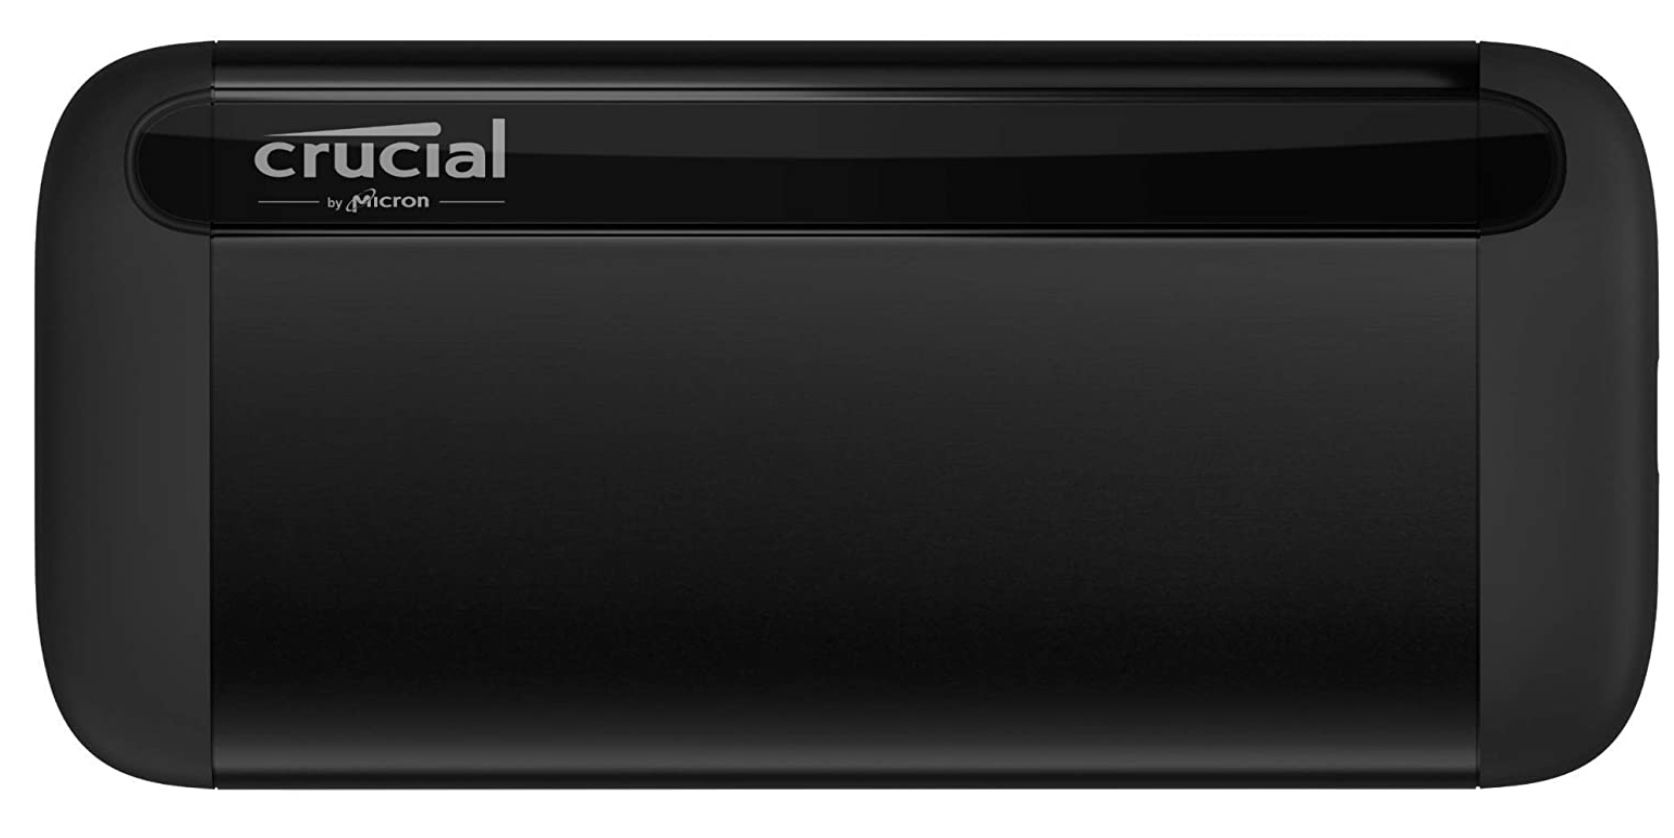 Crucial X8 Portable SSD 1TB für 89,99€ (statt 110€)